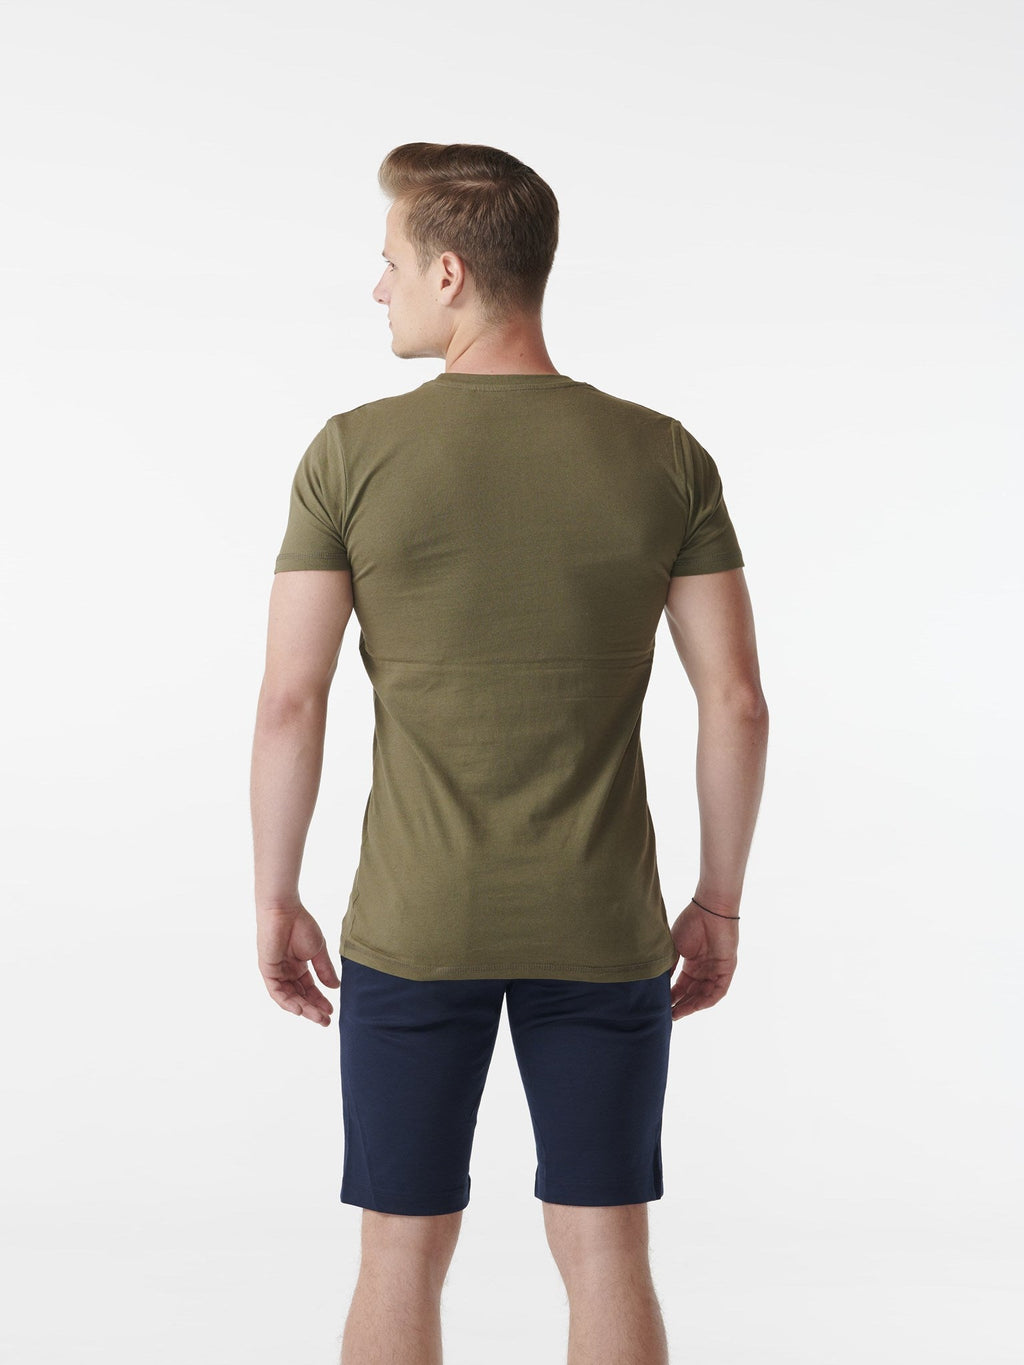 肌肉T恤 - 陆军绿色